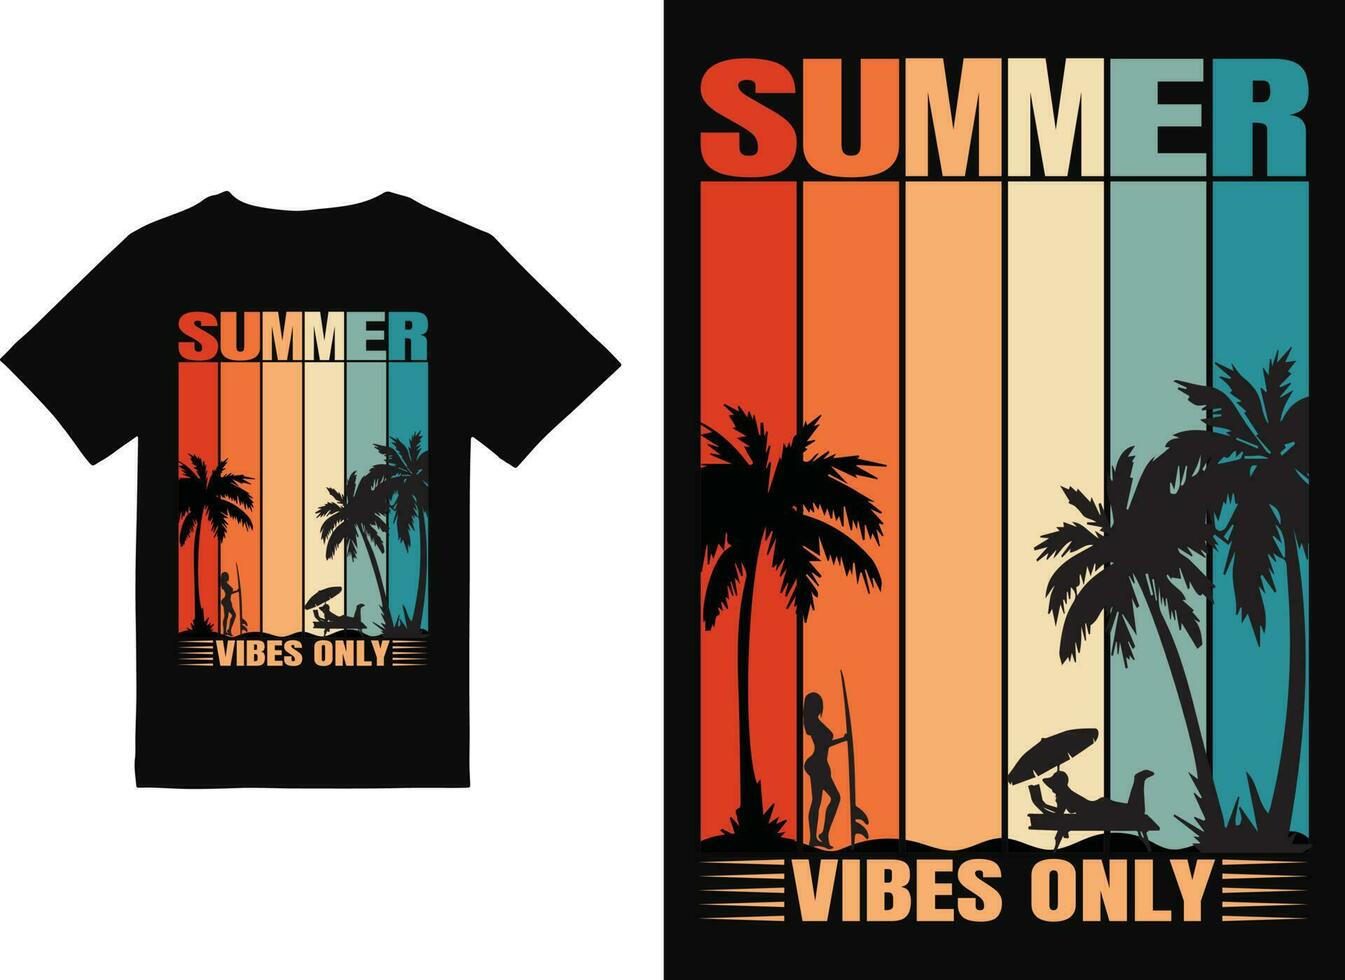 summer t shirt design vector illustration. summer t shirt, summer surfing t shirt. summer sublimation t shirt design Vector illustration